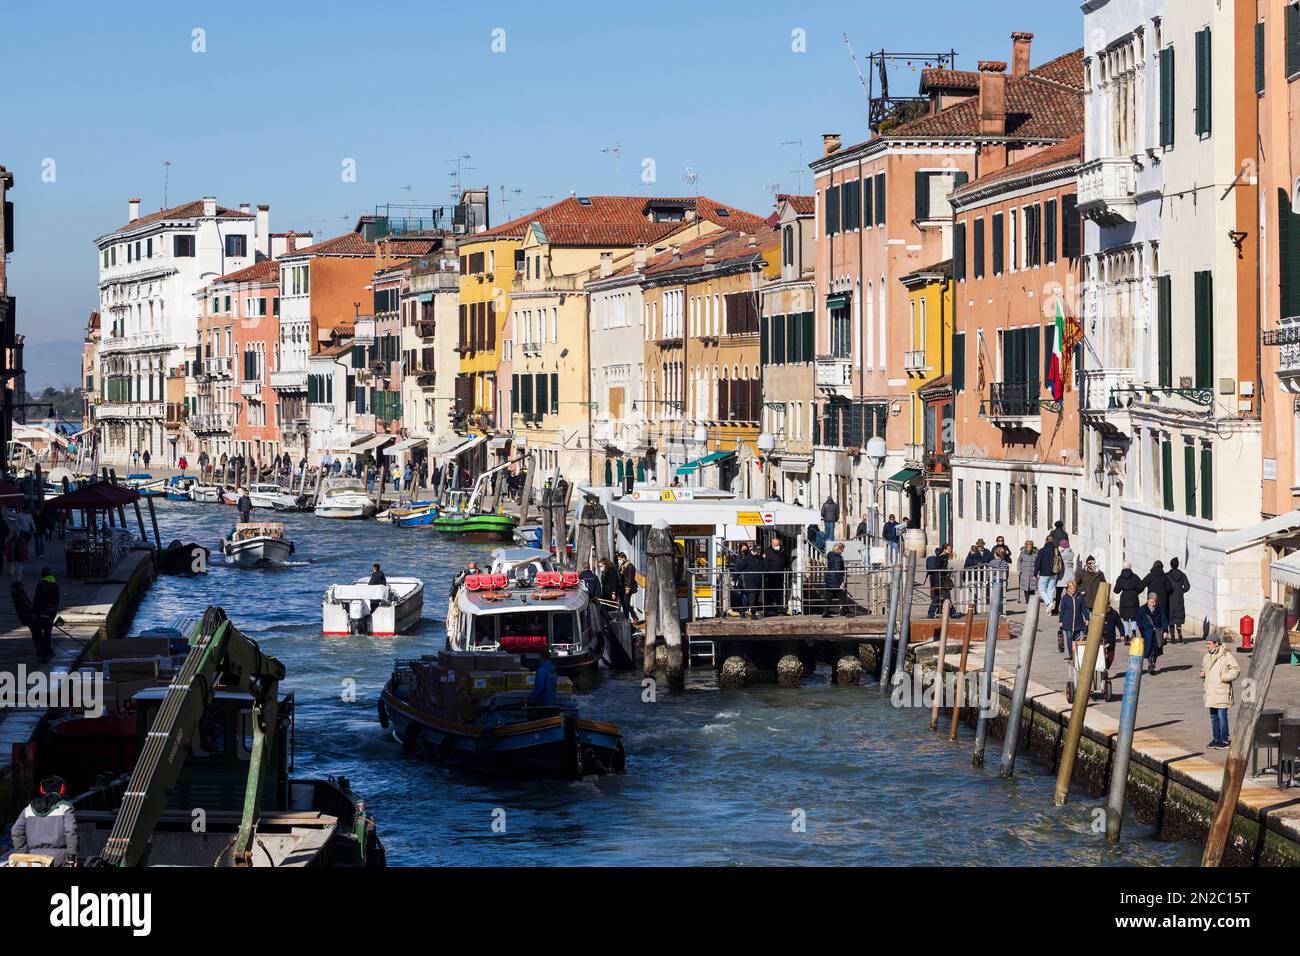 Canal, Venice, Veneto, Italy, Europe Stock Photo